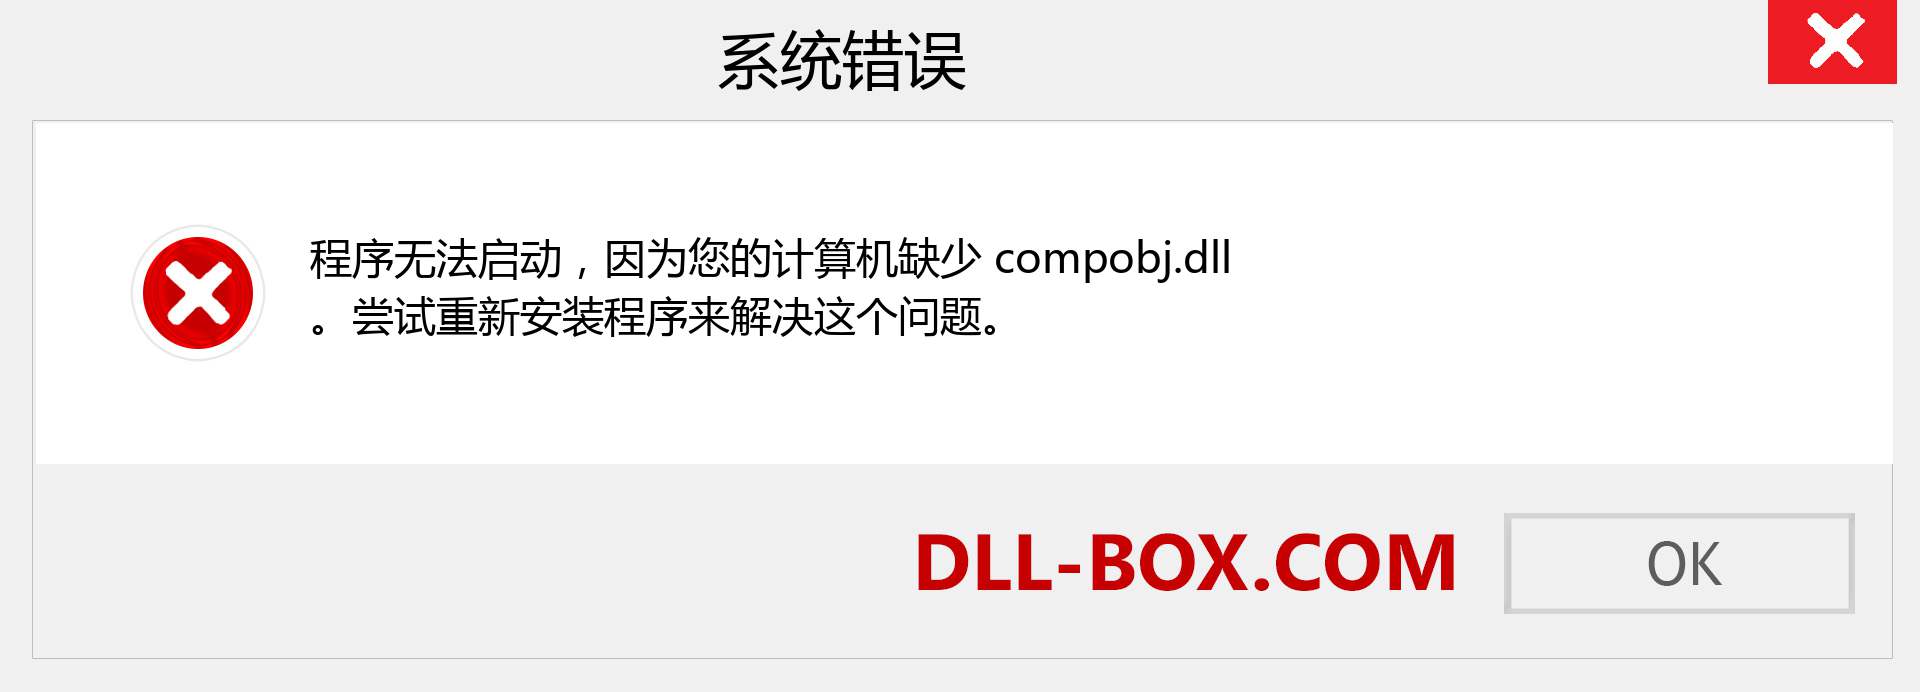 compobj.dll 文件丢失？。 适用于 Windows 7、8、10 的下载 - 修复 Windows、照片、图像上的 compobj dll 丢失错误